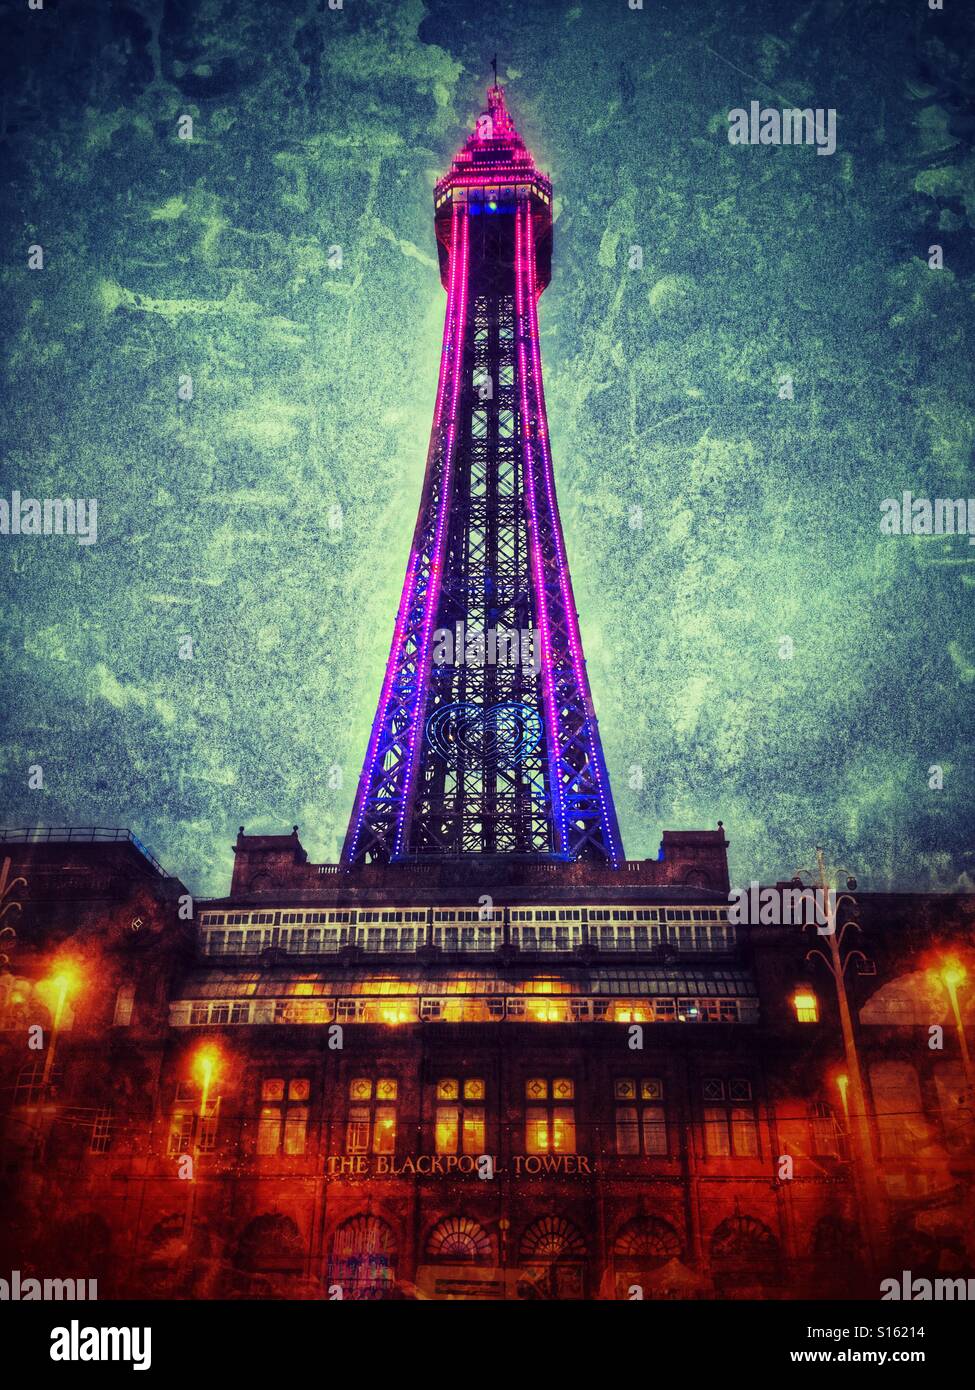 La tour de Blackpool avec spectacle de lumière pendant les illuminations Banque D'Images